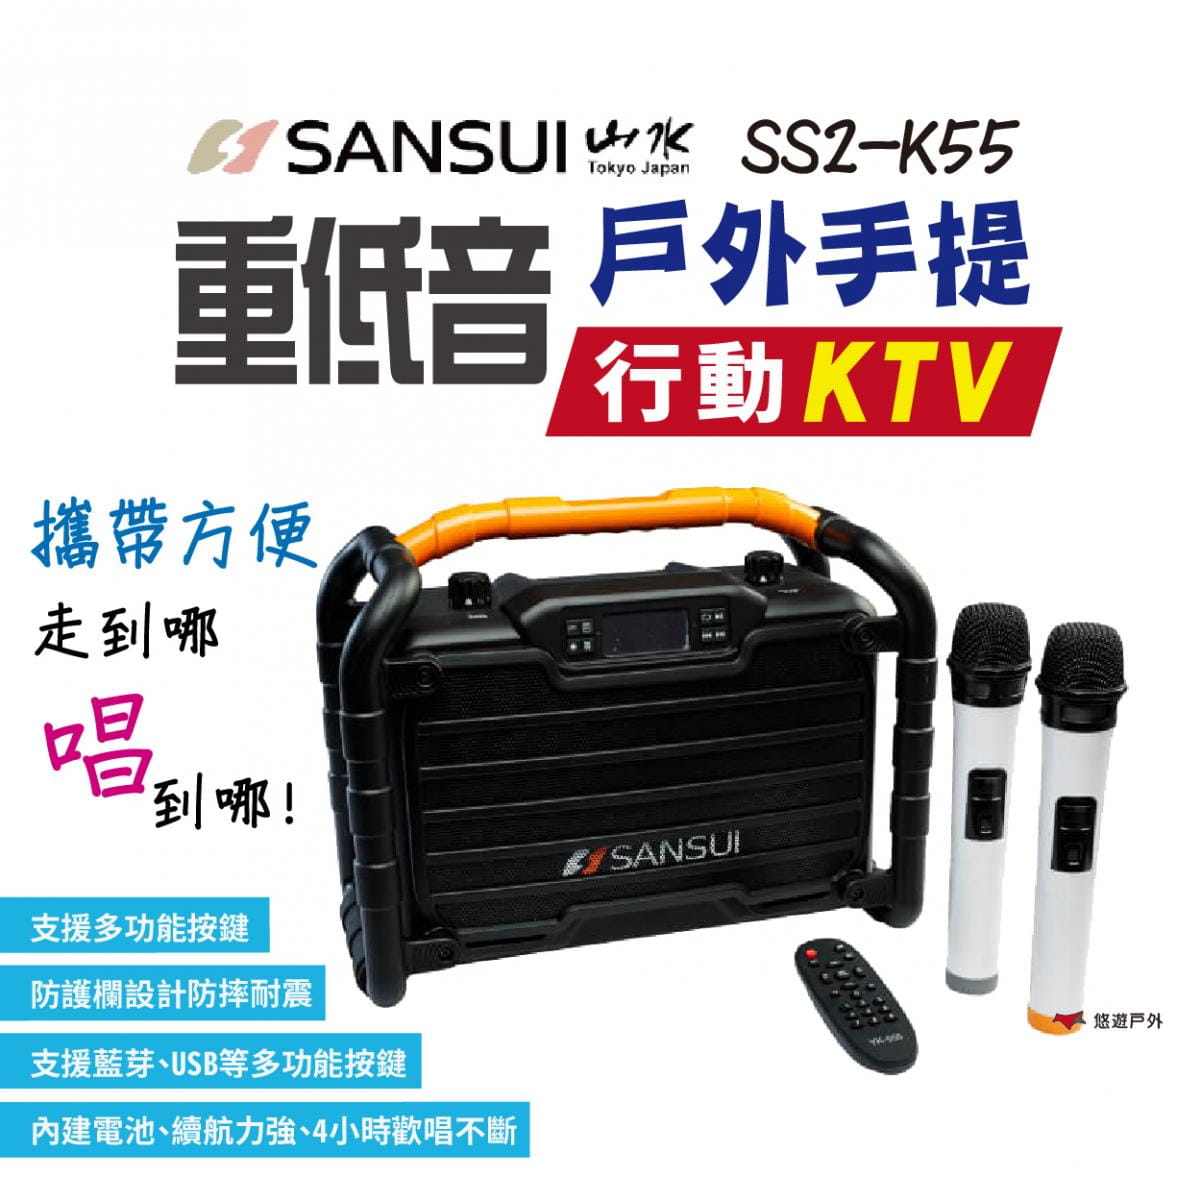 【SANSUI山水】SS2-K55 重低音戶外手提行動KTV (悠遊戶外) 0